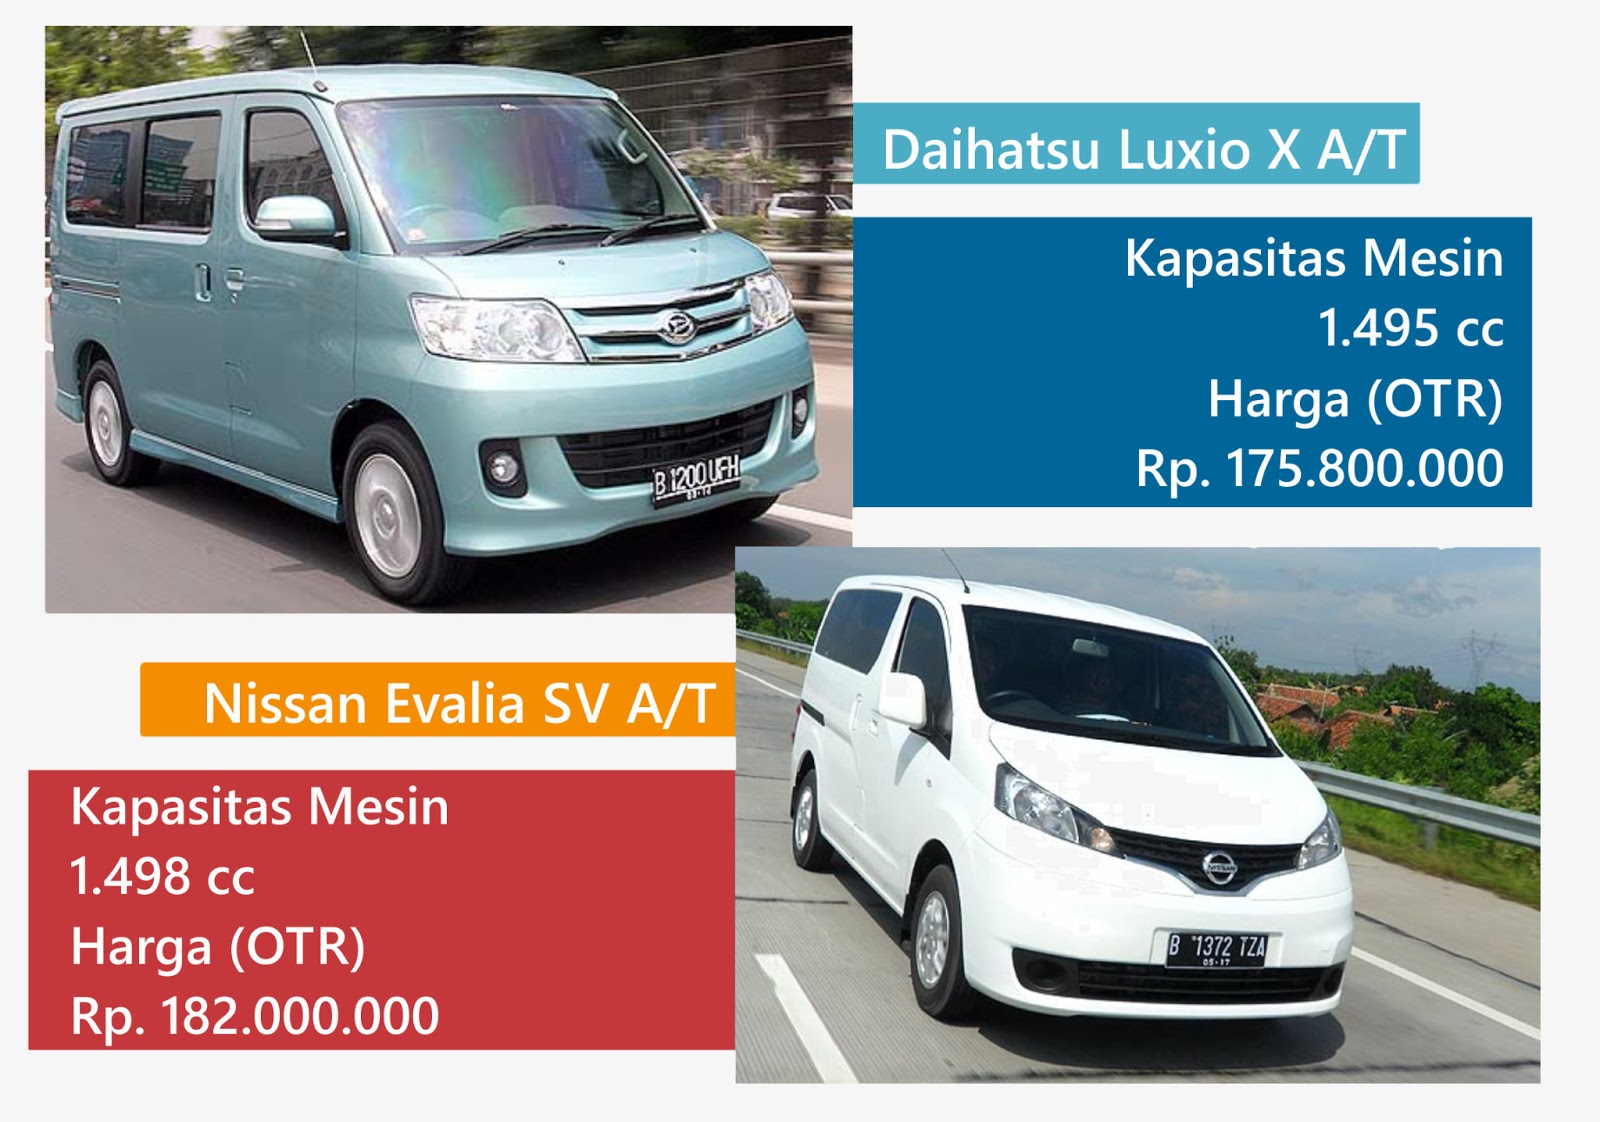 Compare Low Van People Carier Daihatsu Luxio VS Nissan Evalia LOnews